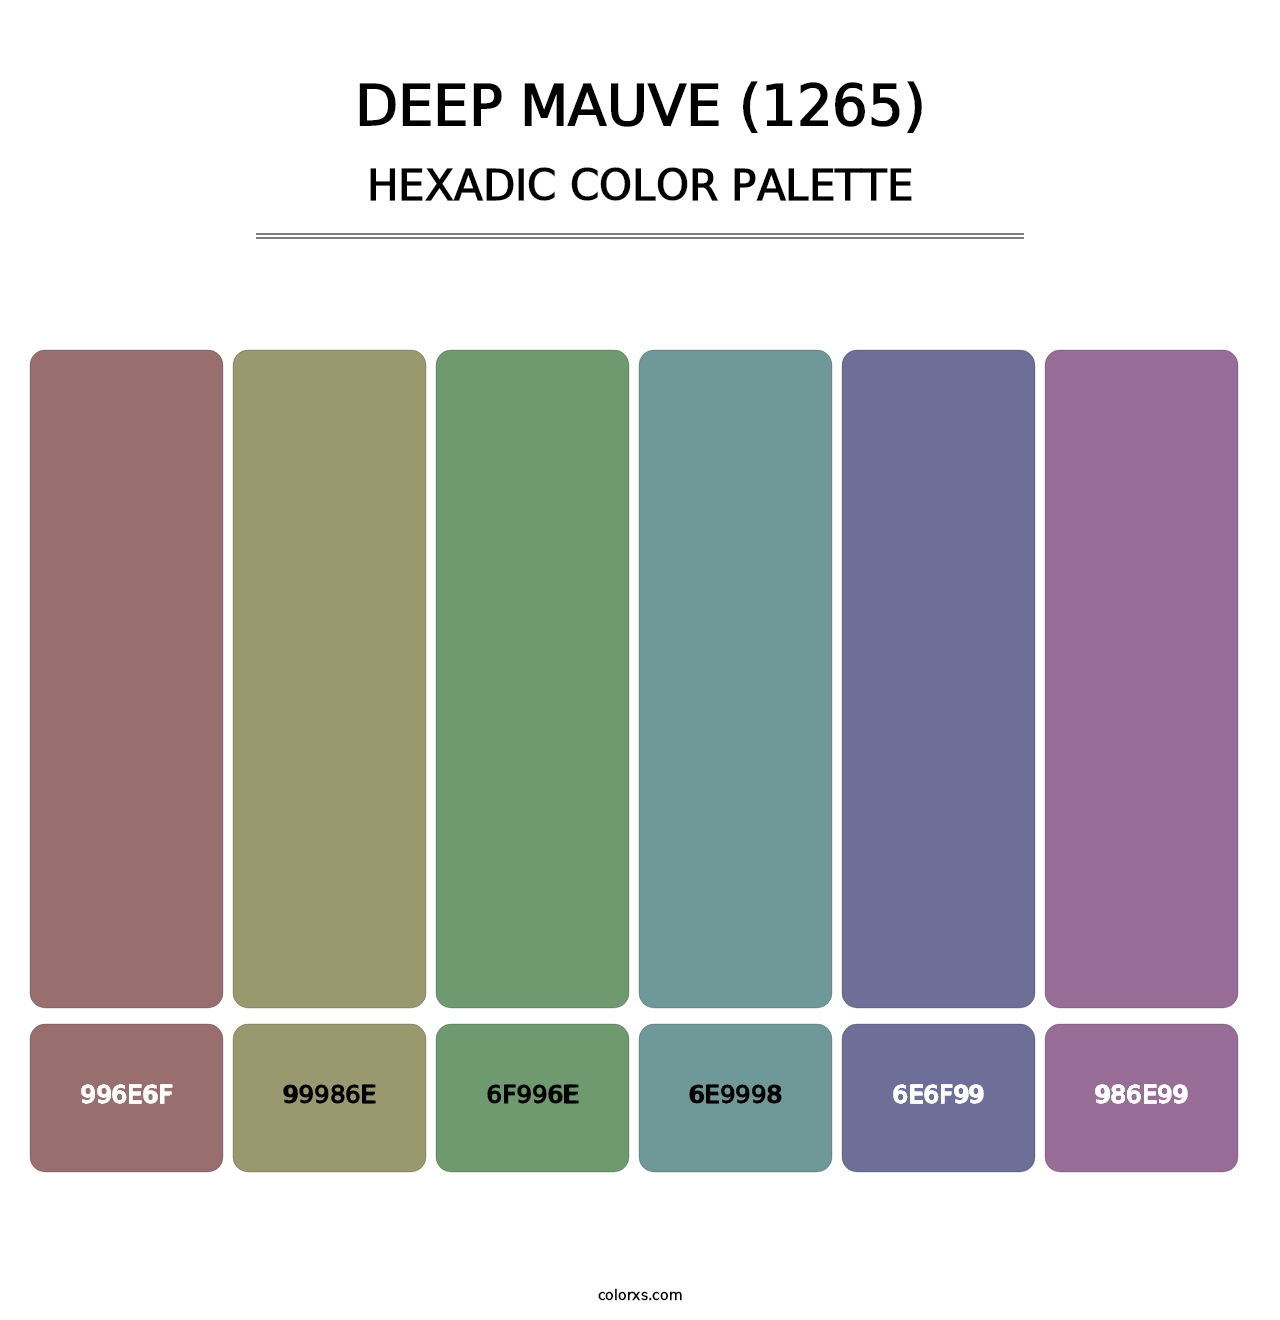 Deep Mauve (1265) - Hexadic Color Palette